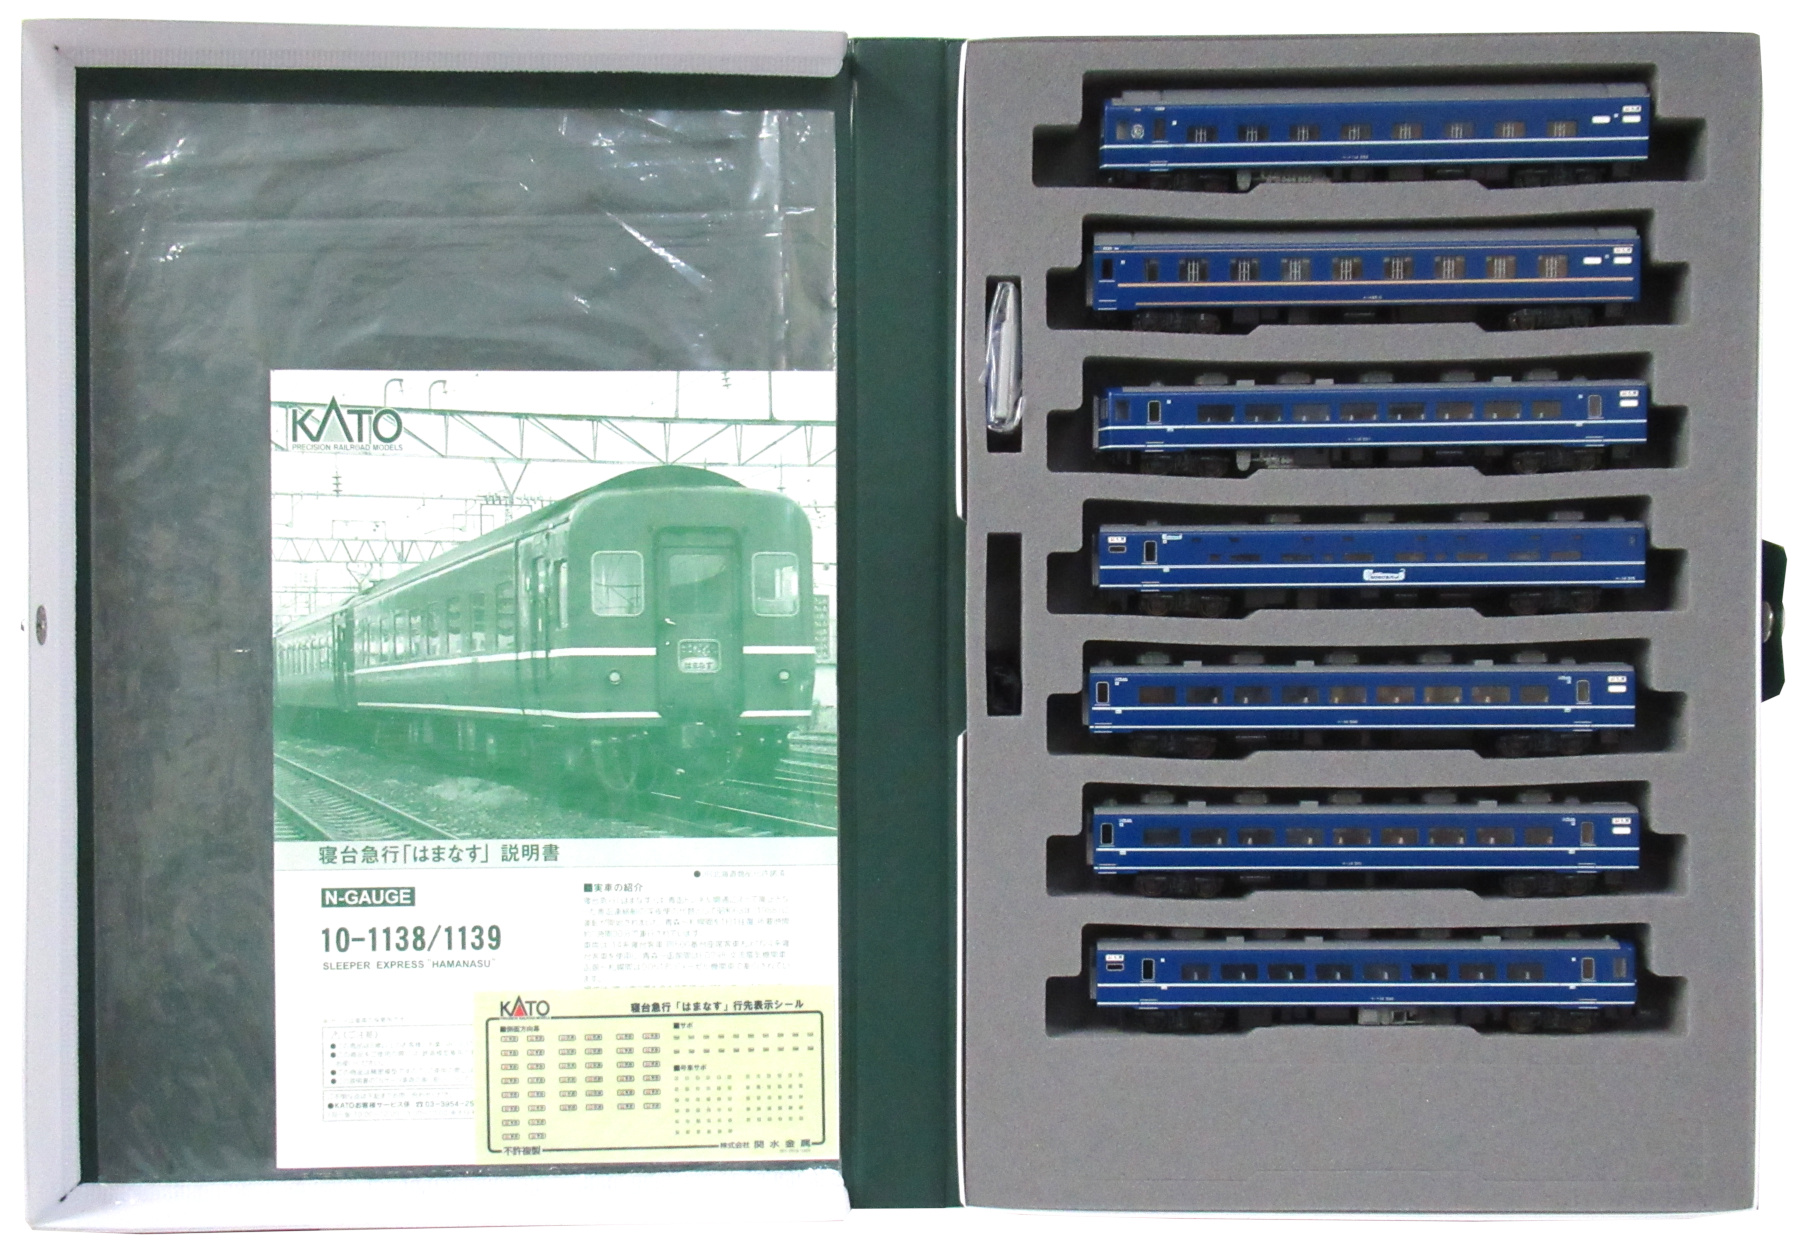 公式]鉄道模型(10-1138寝台急行「はまなす」7両基本セット)商品詳細 